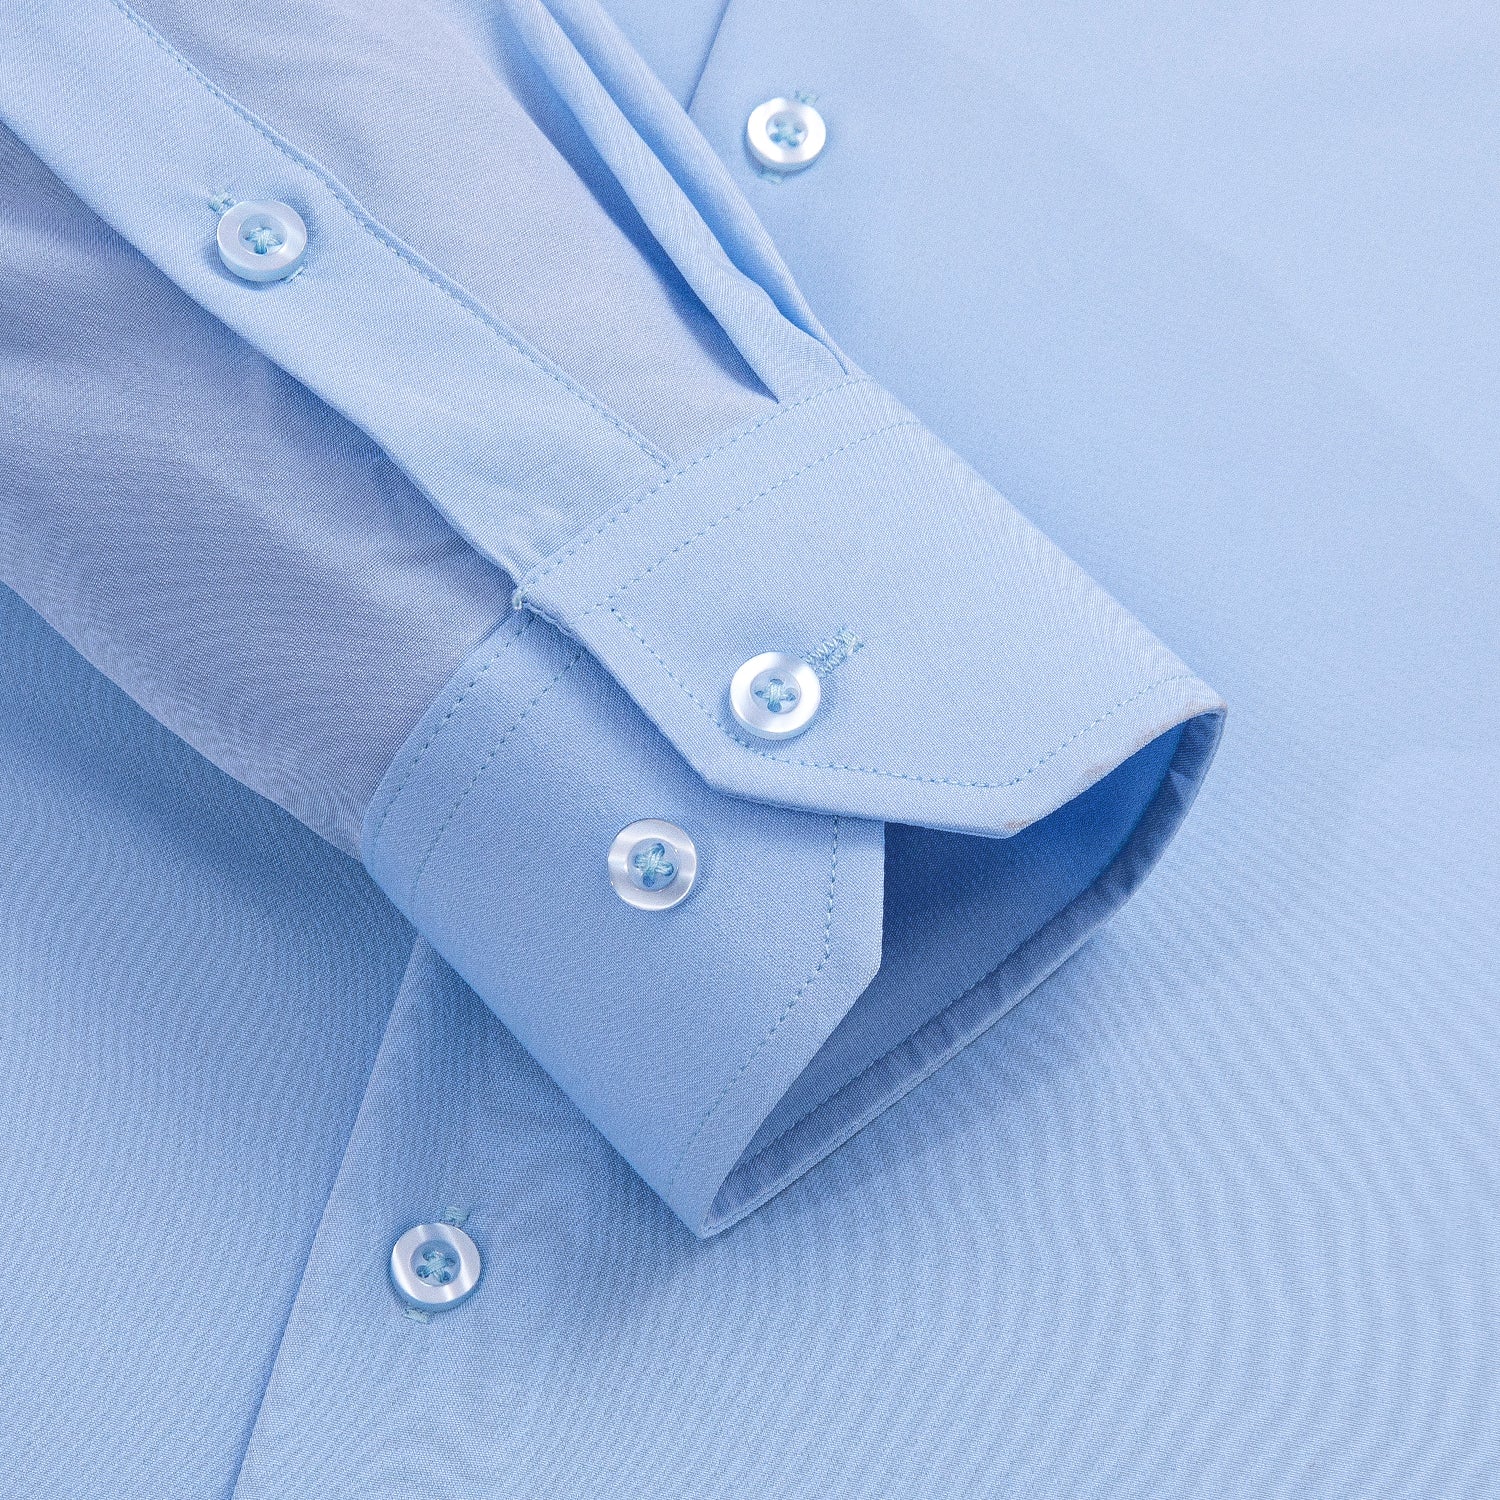  Dress Shirt Sky Blue Stretch Men's Long Sleeve Shirt